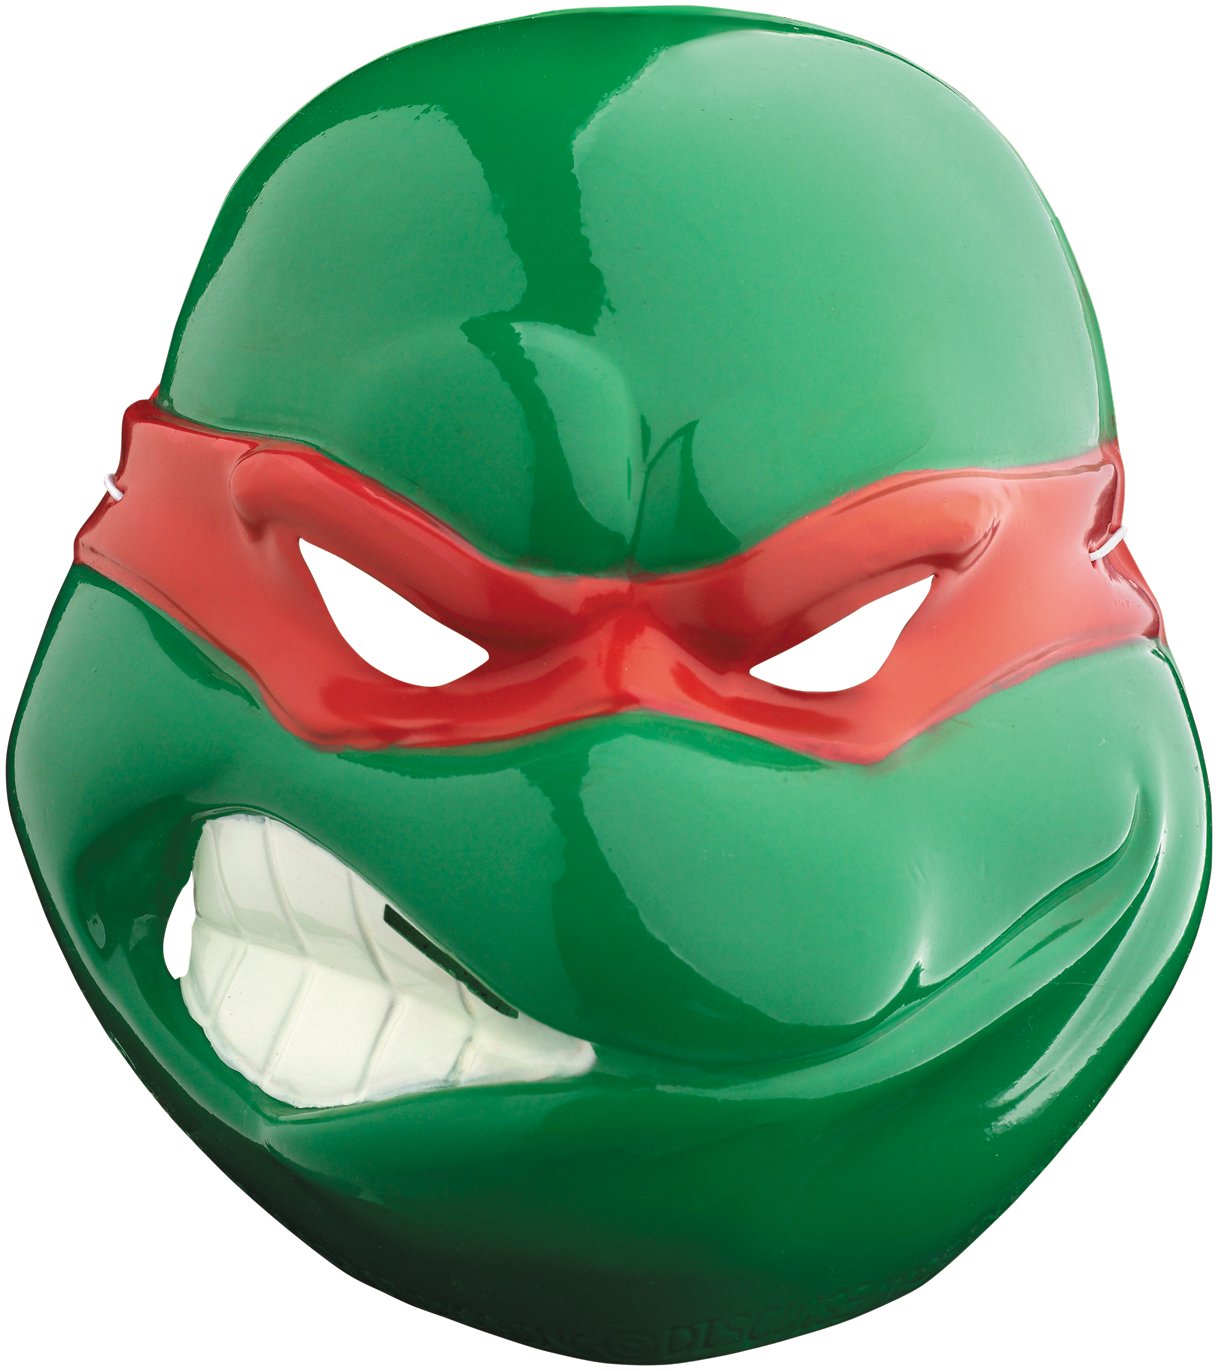 TMNT - Raphael Vacuform Mask (Adult)